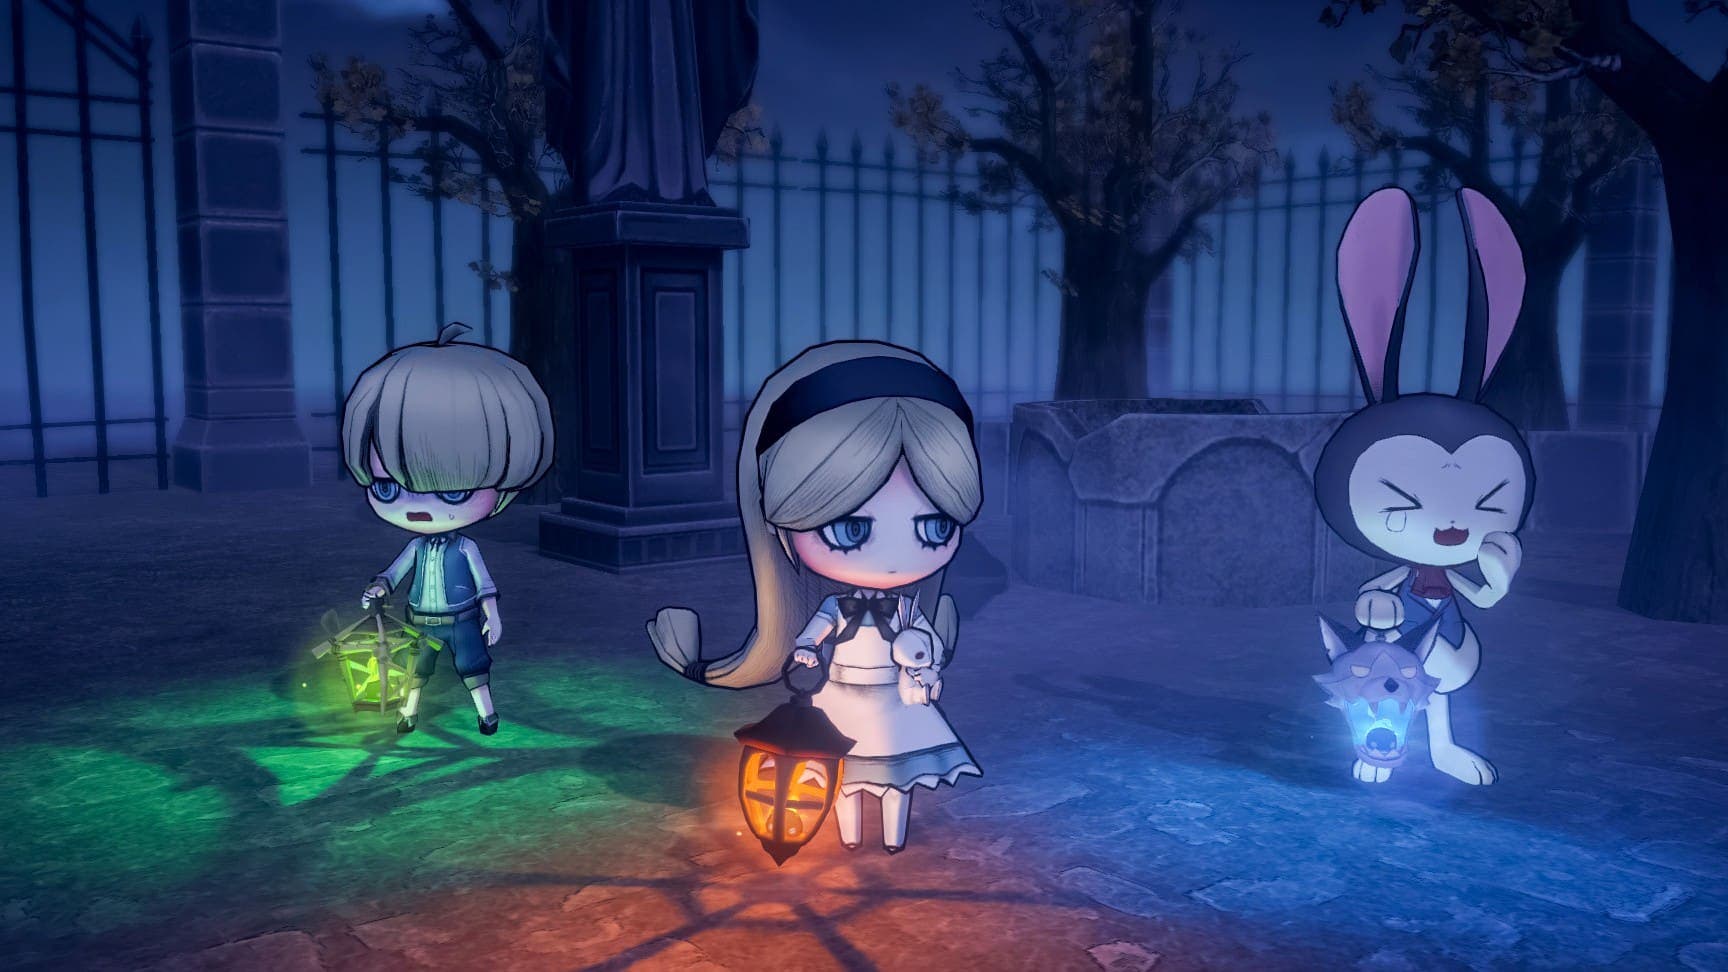 Podrás jugar gratis a este juego de pilla pilla terrorífico en Nintendo Switch durante este Halloween